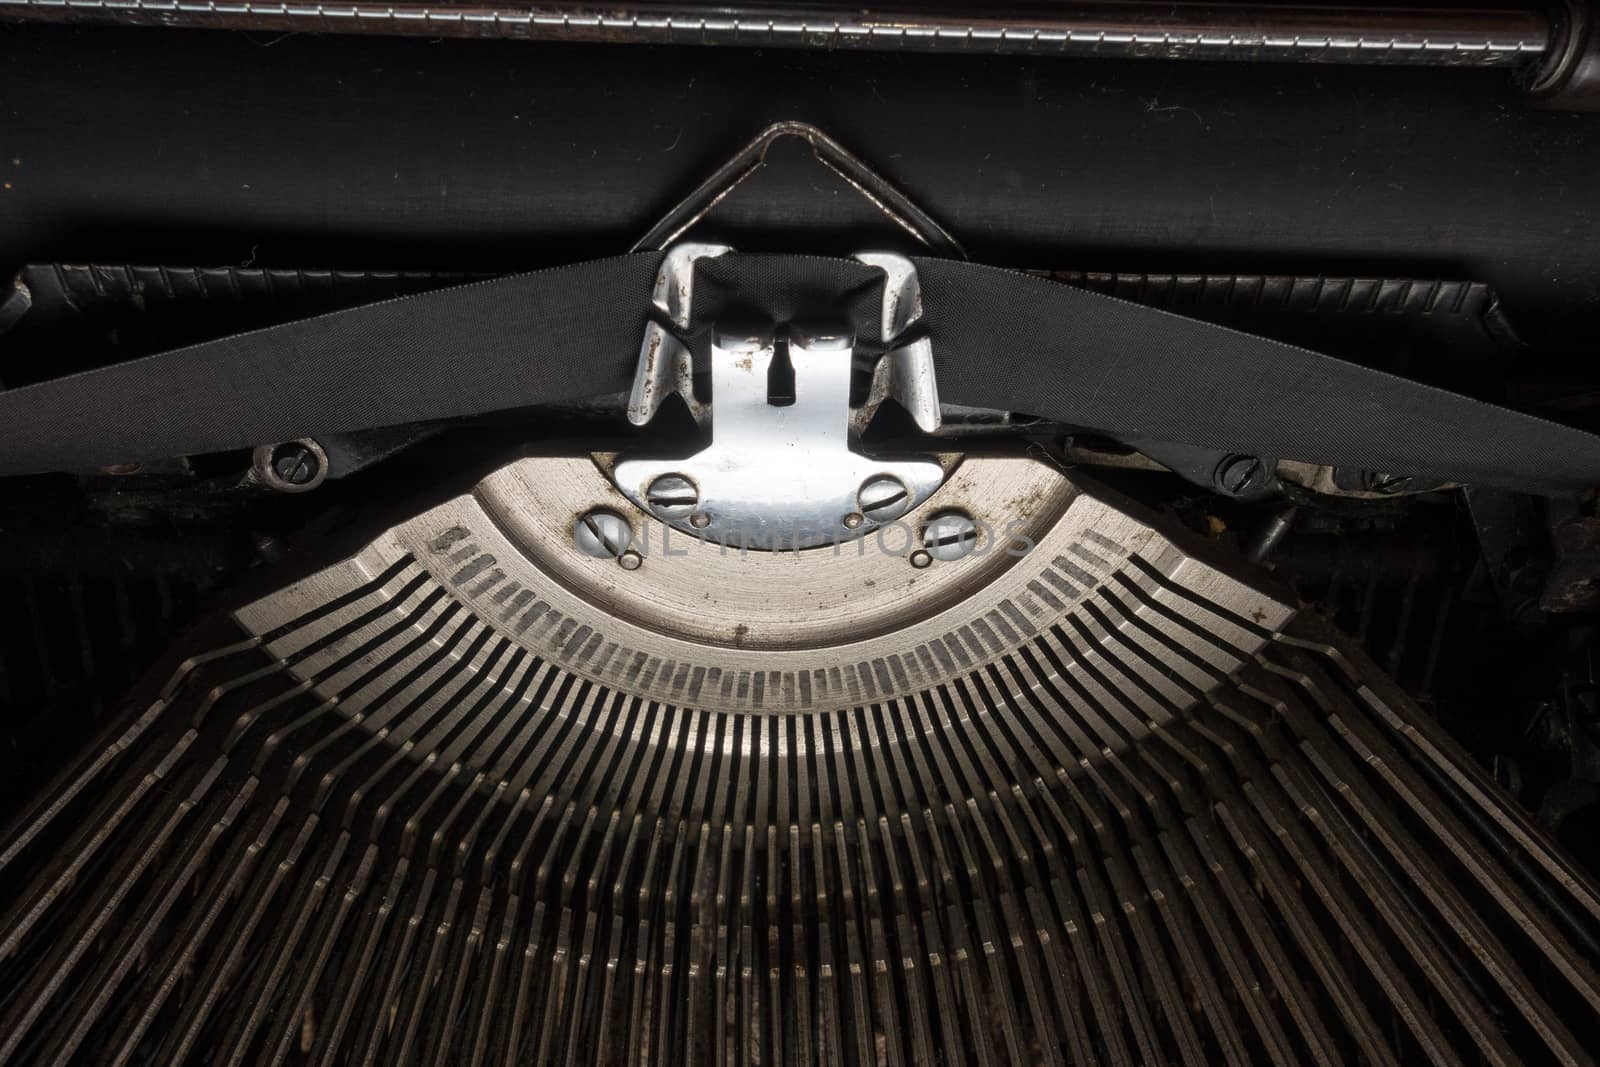 Typewriter by Portokalis